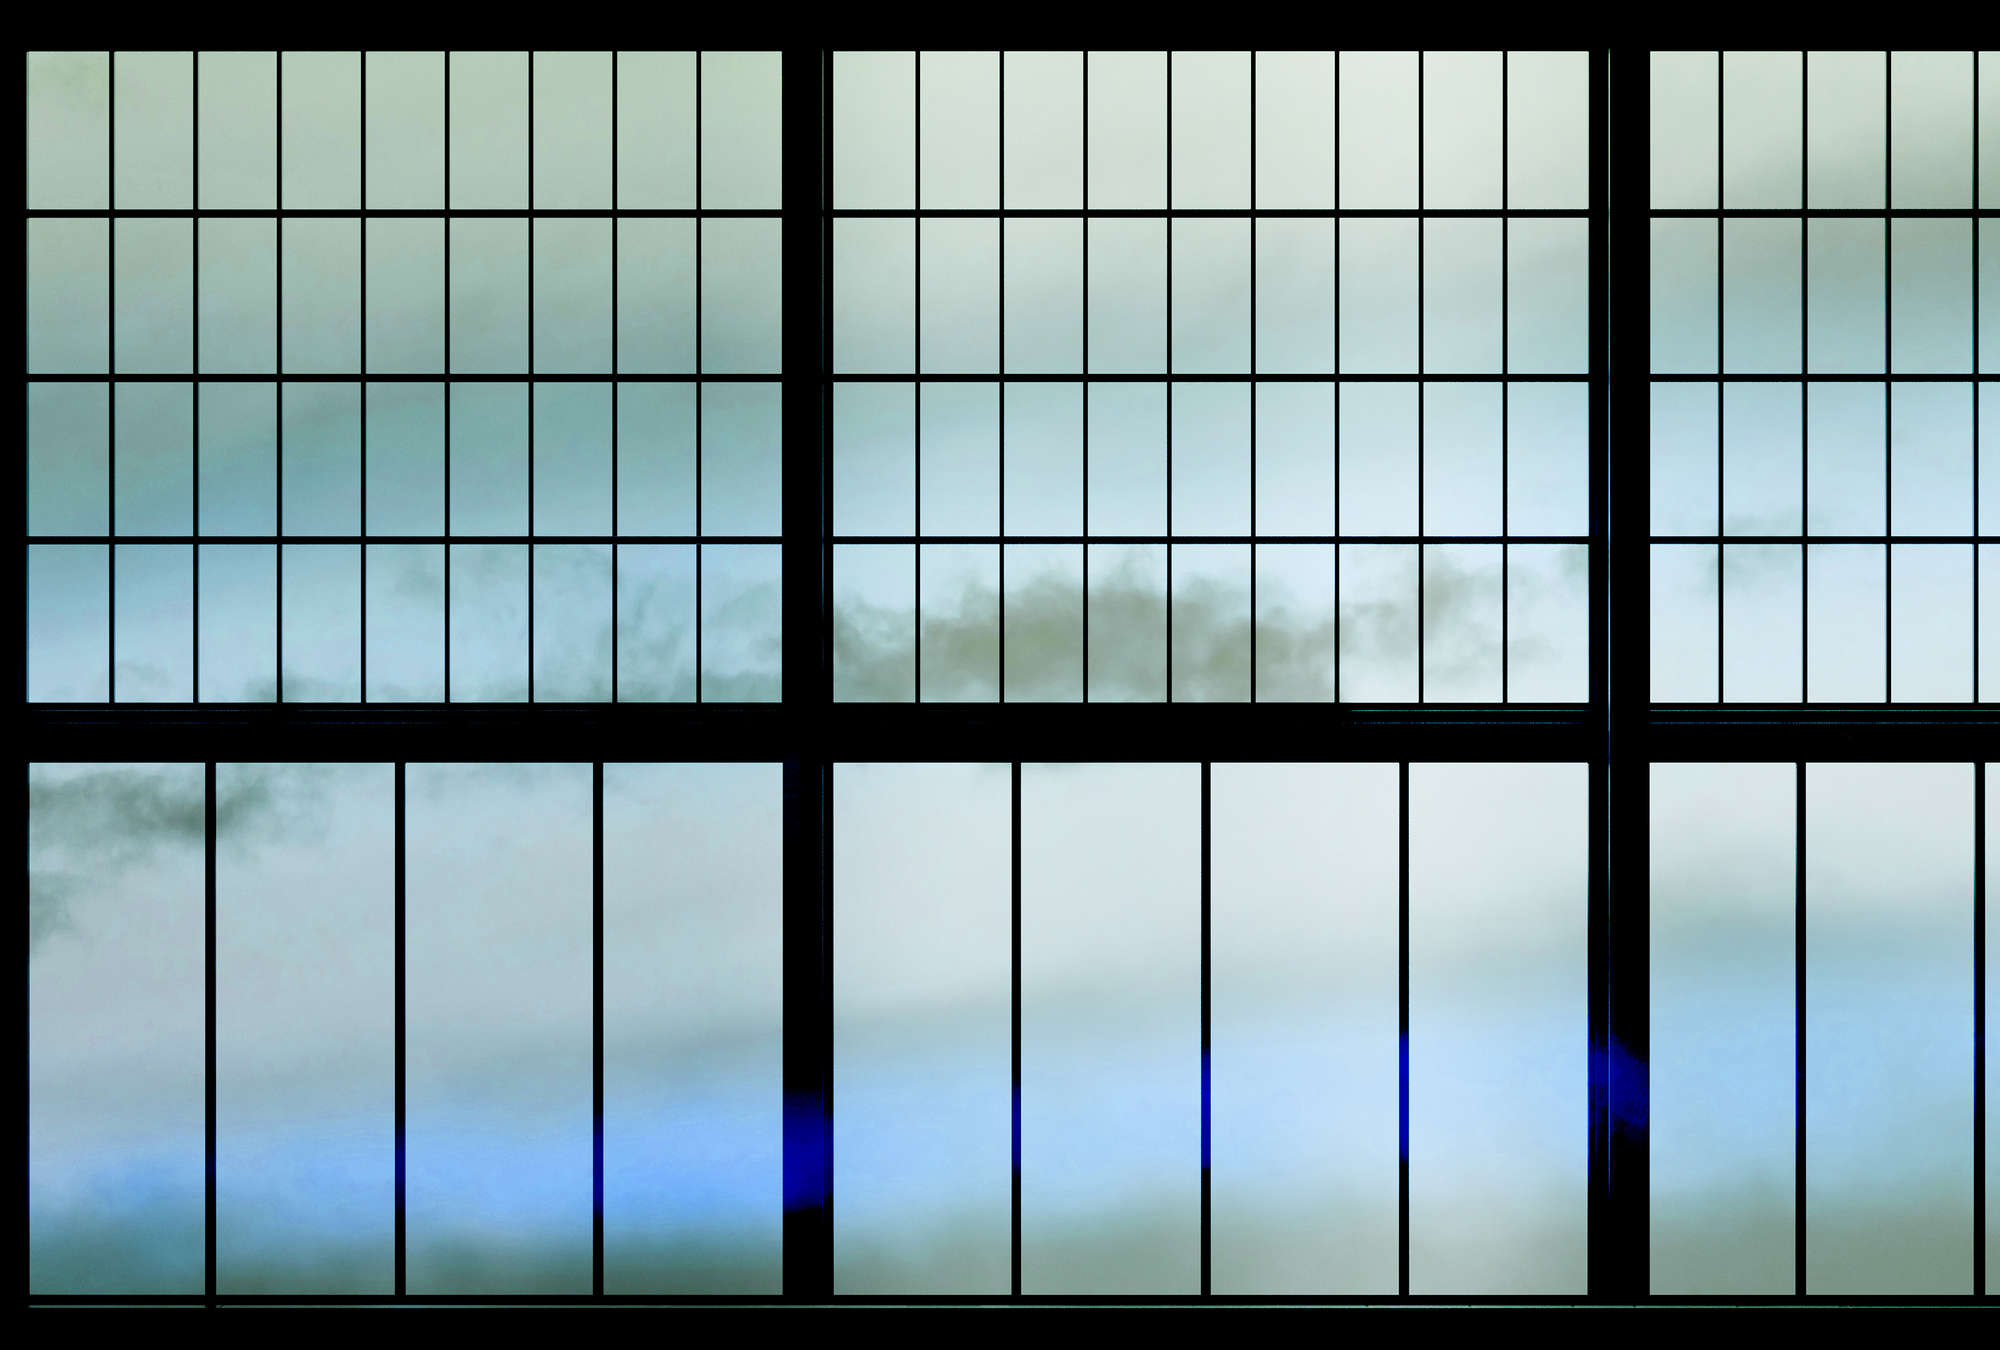             Sky 3 - Papel pintado Muntin Window with Cloudy Sky - Azul, Negro | Tejido sin tejer texturado
        